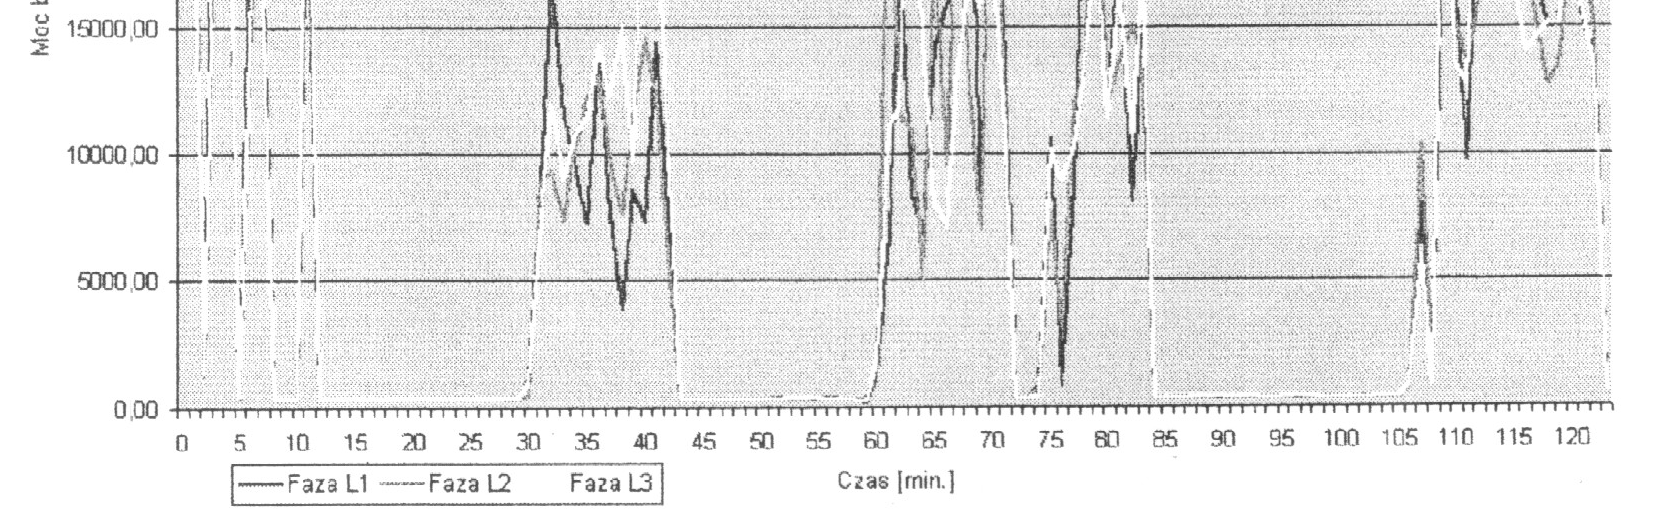 Rys.2. Pobór mocy biernej w poszczególnych fazach pieca łukowego 140Mg 30kV w Hucie Celsa Ostrowiec Św.